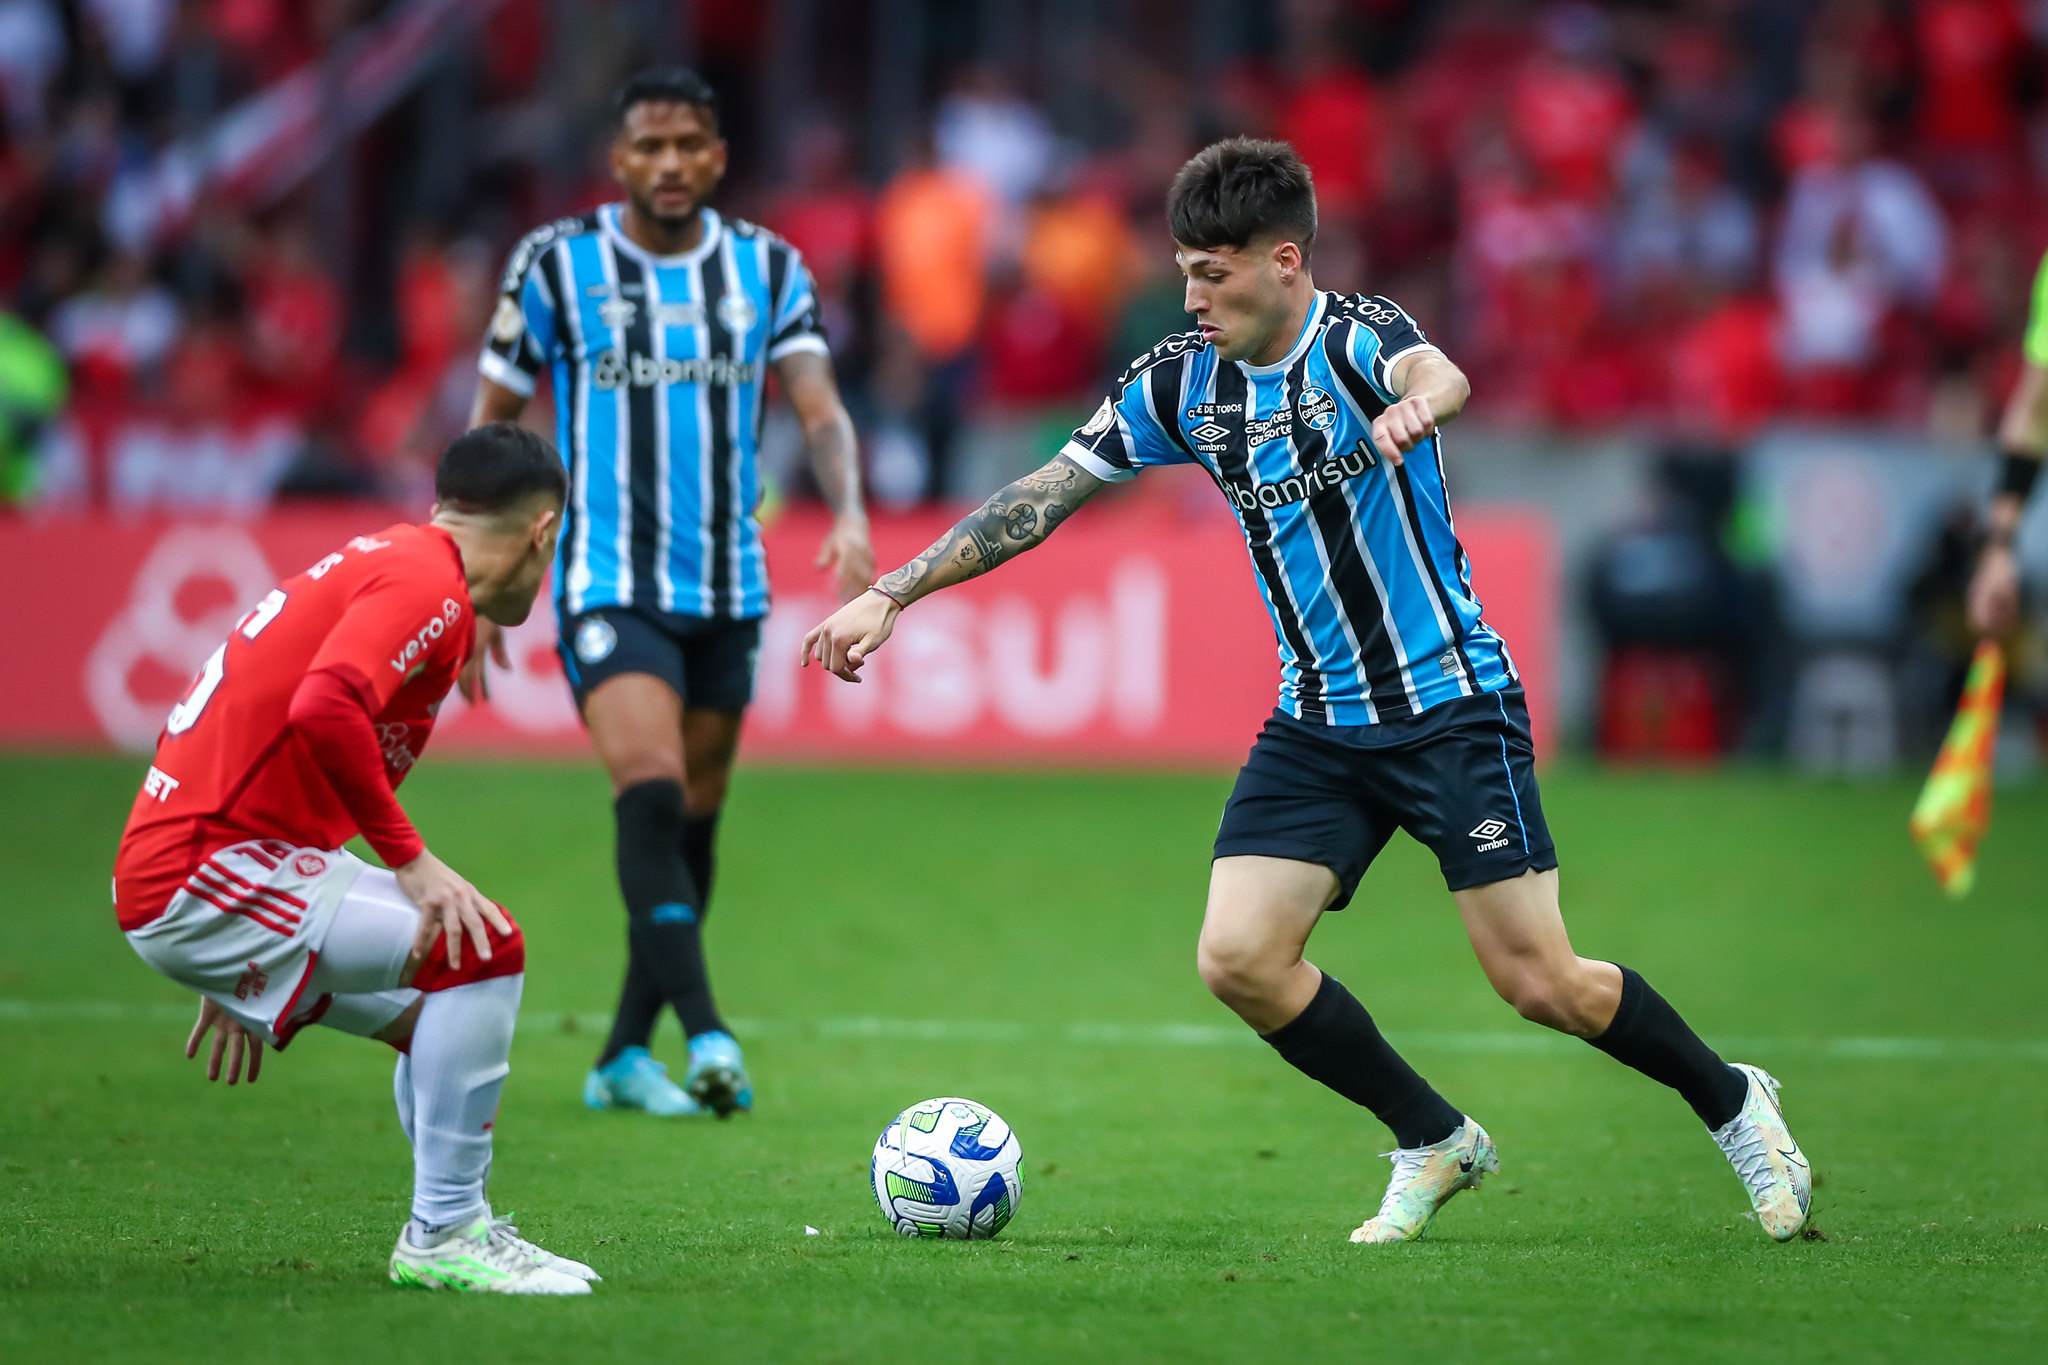 Grêmio aparece como 10º melhor time do mundo em lista de site - ESPN